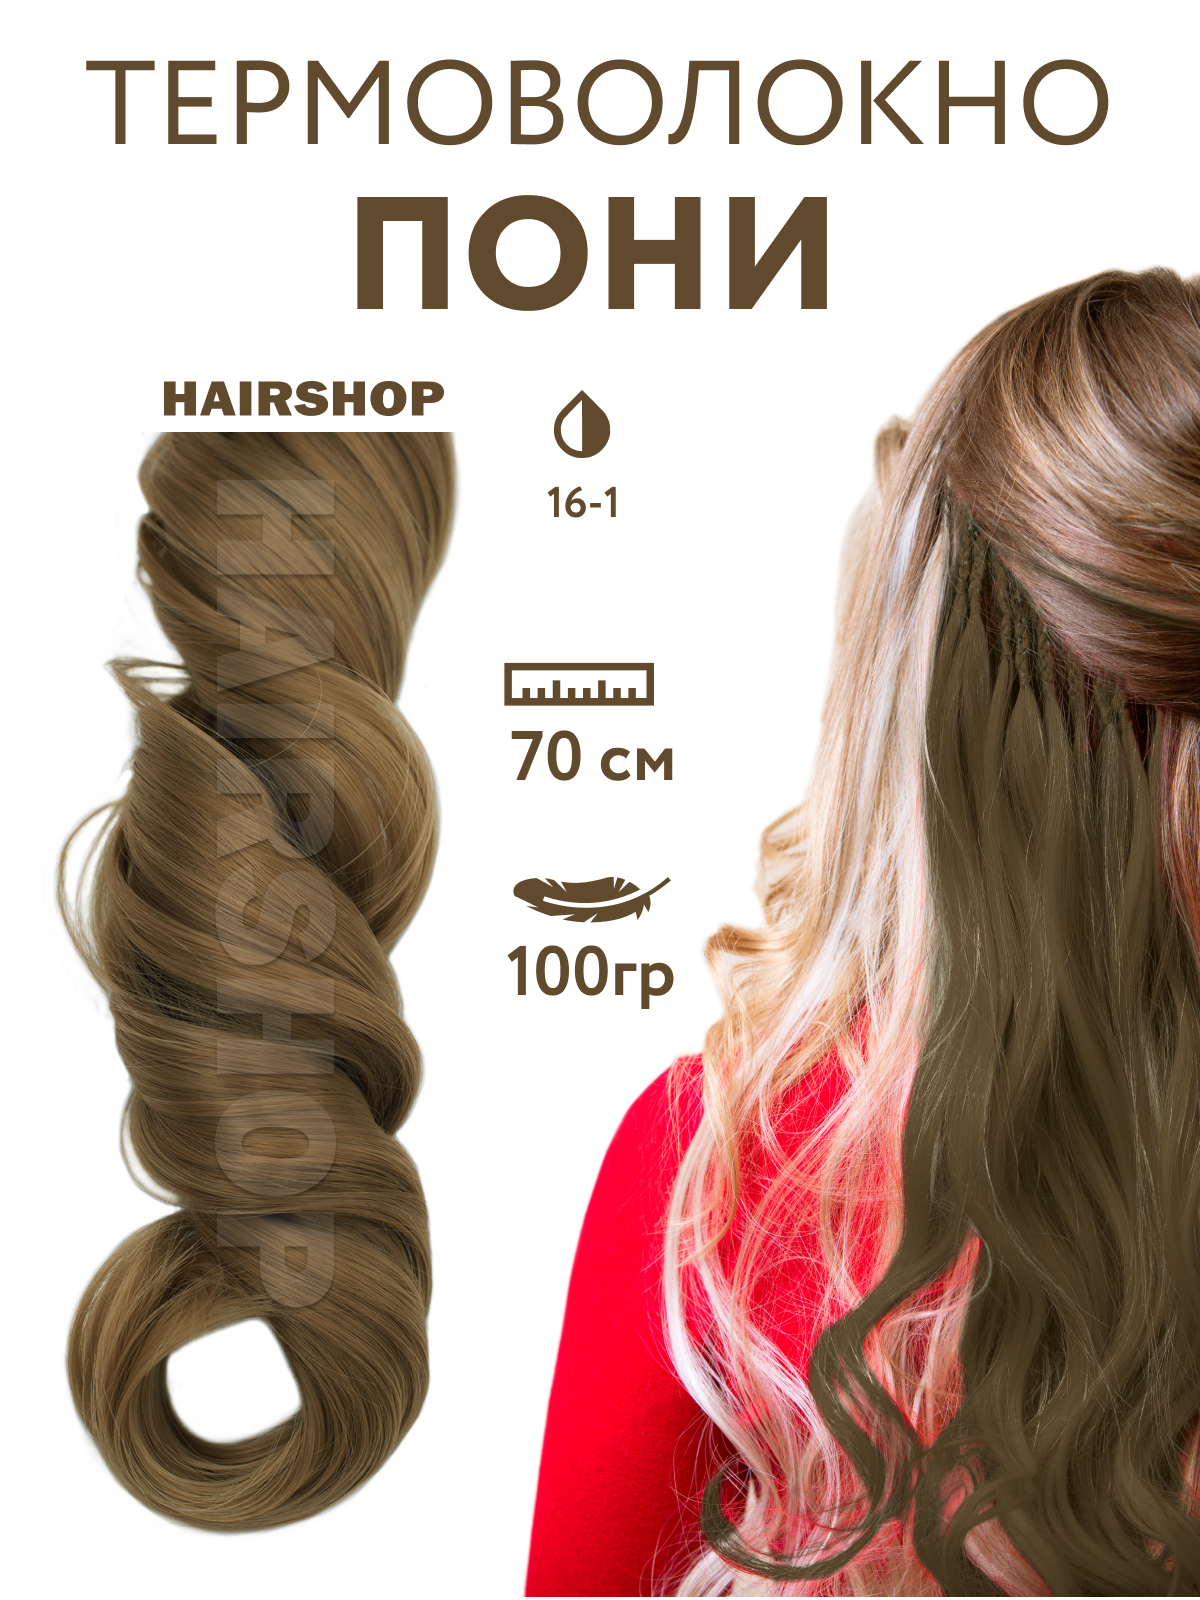 Канекалон Hairshop Пони HairUp для точечного афронаращивания 16-1 Пепельно-русый 1,4м